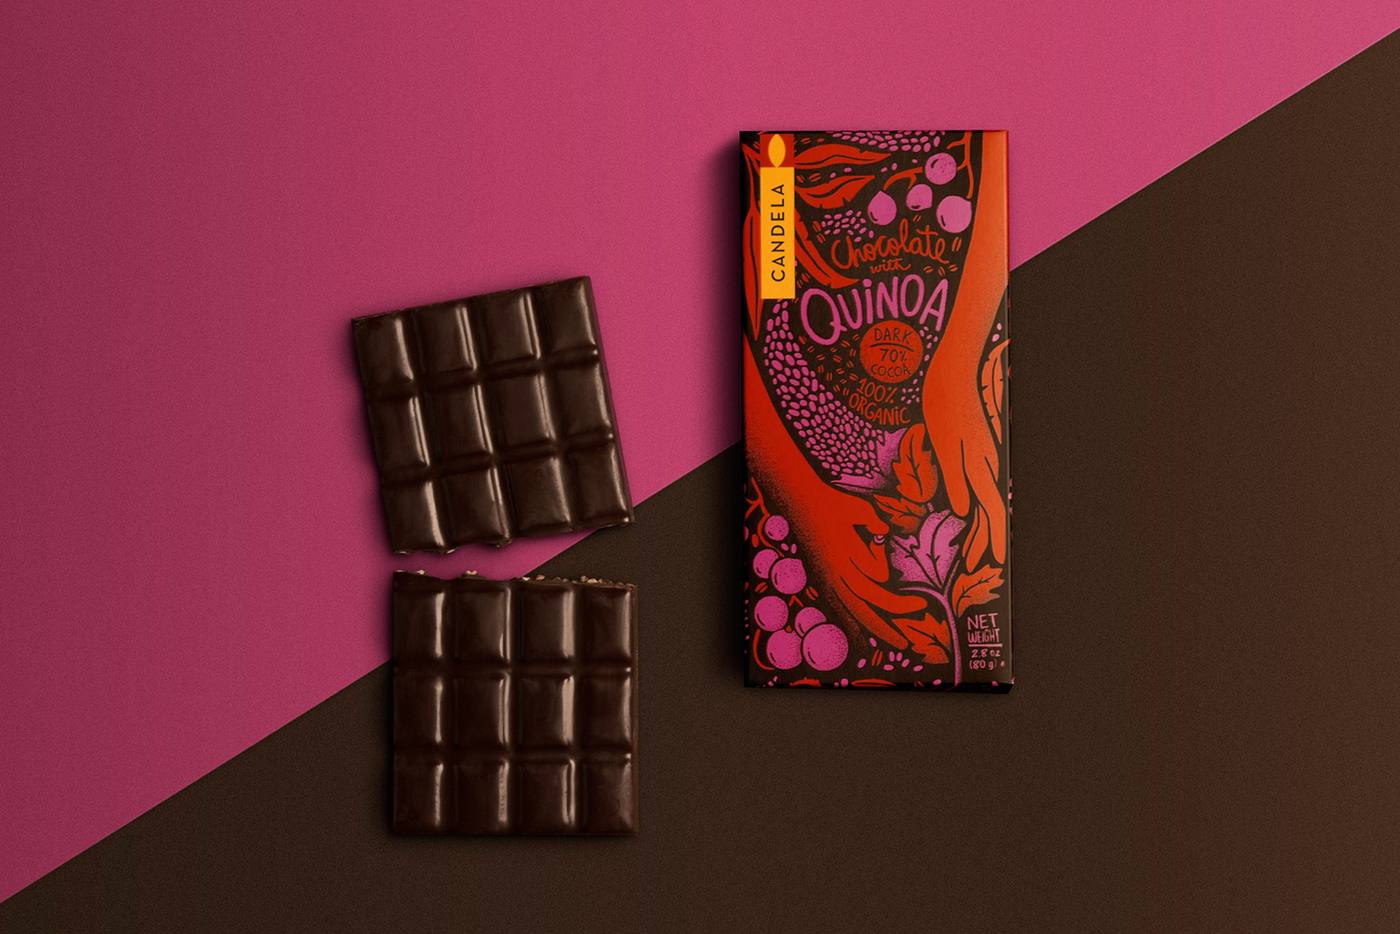 消费者与供应商之间的特殊关系,秘鲁天然巧克力食品包装设计